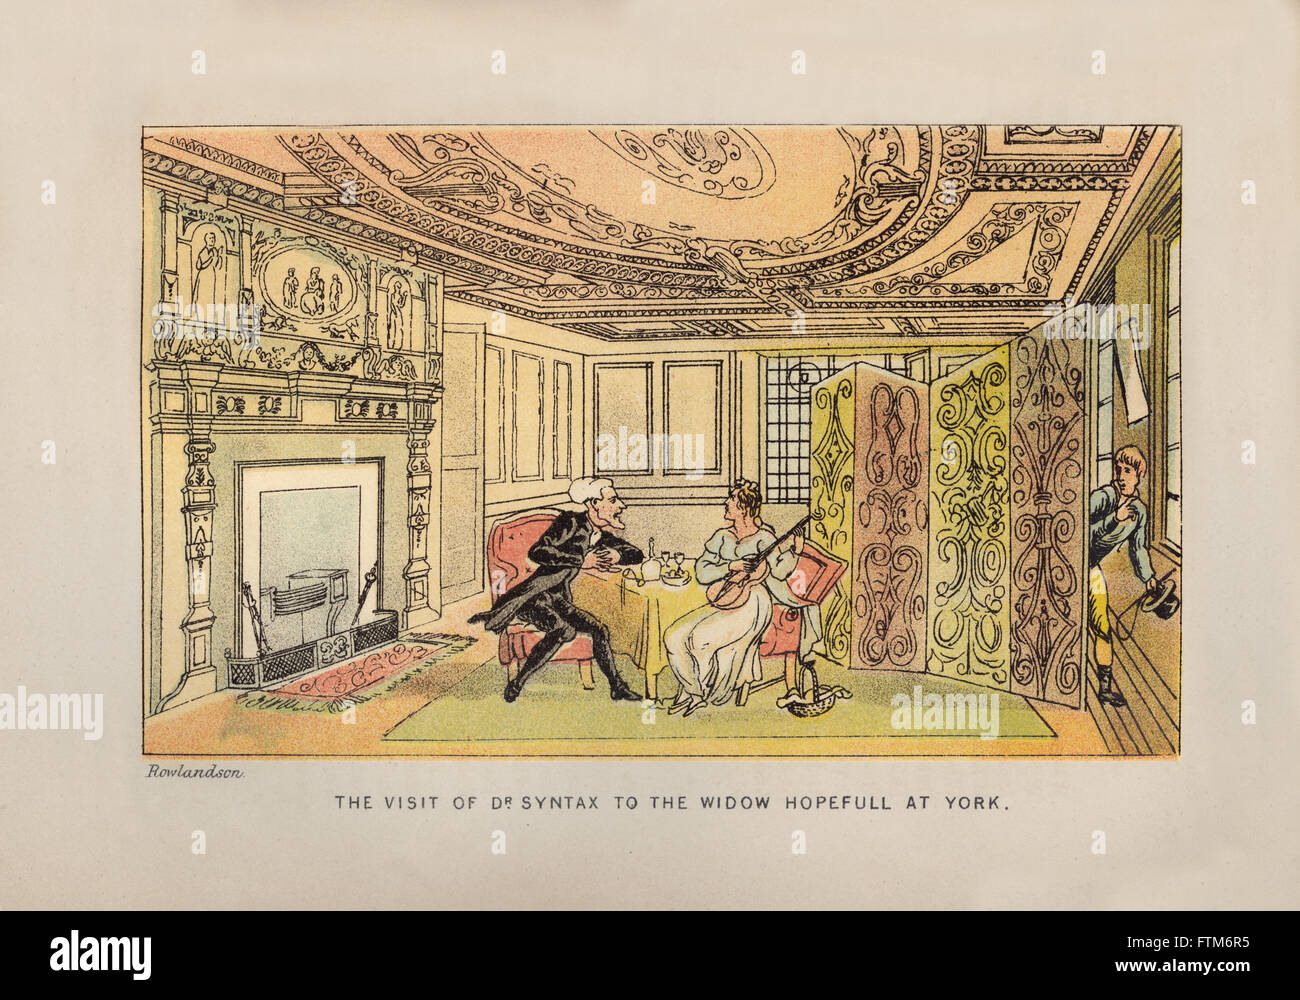 Illustration couleur vintage satirique par Thomas ROWLANDSON (1756-1827) de "Dr. La syntaxe Trois Tours" par William Combe (1741-1823), publiée en 1869. Banque D'Images